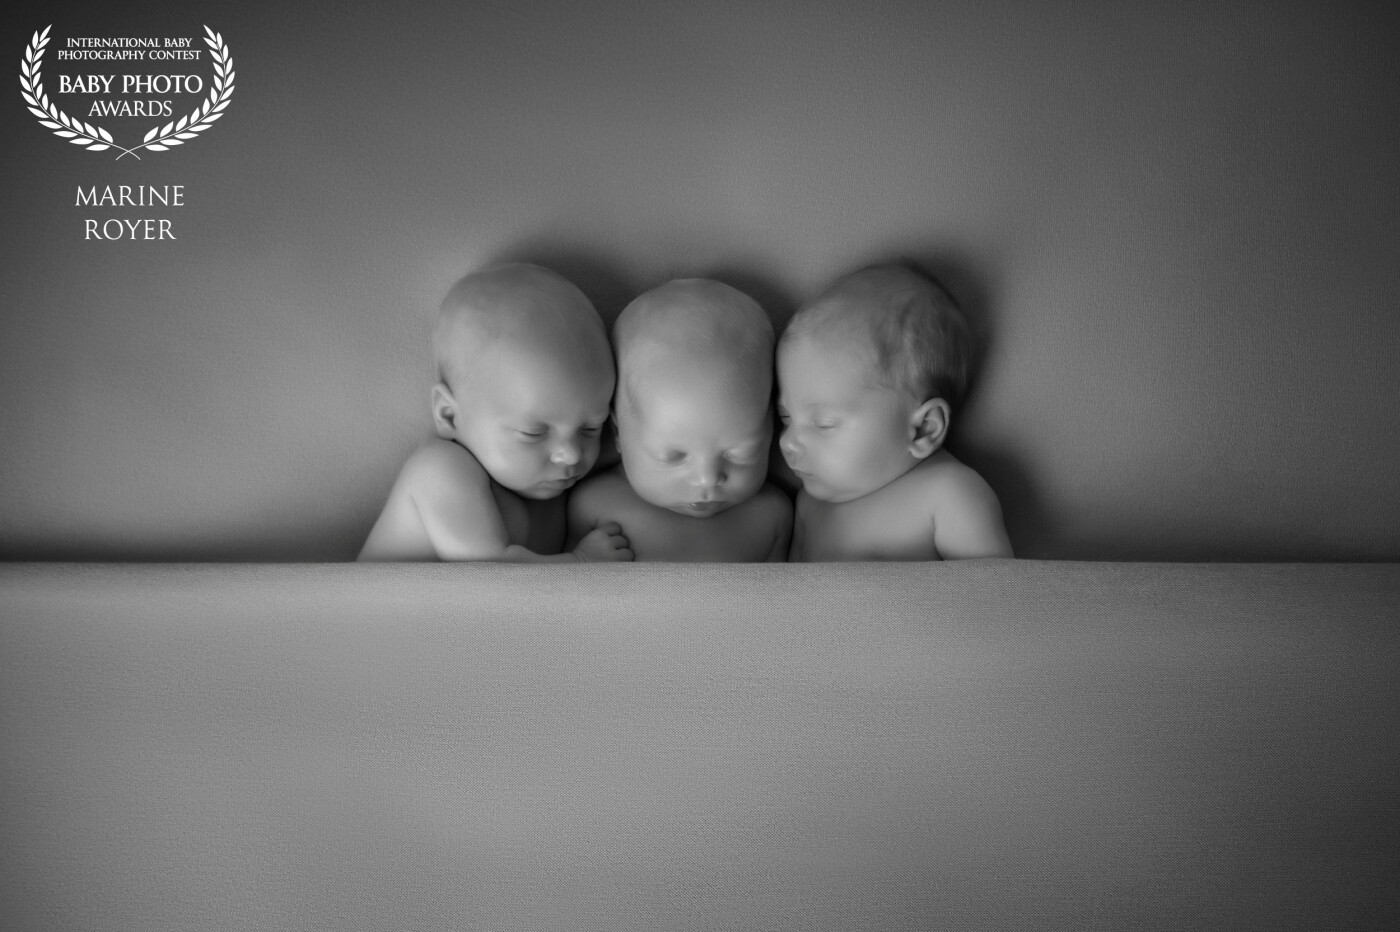 En 5 ans d'exercice, c'est la première fois que je photographie de vraies triplés...Une séance et expérience unique!  La vie est un miracle.